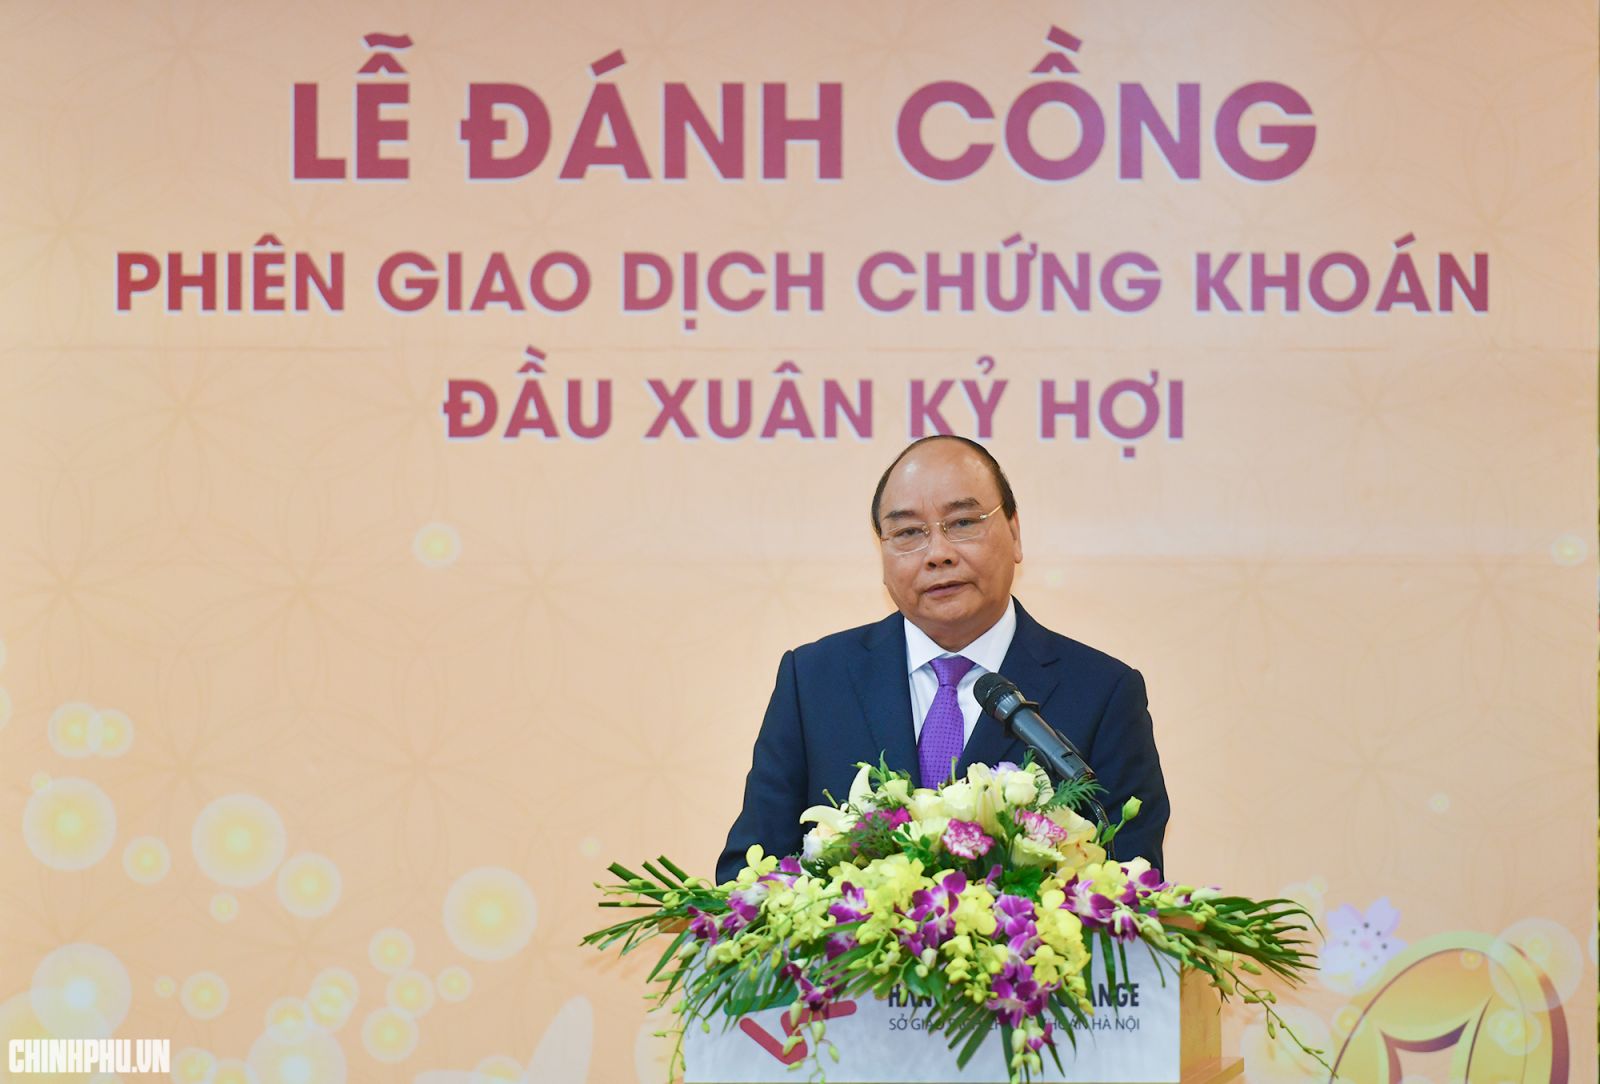 Thủ tướng Nguyễn Xuân Phúc phát biểu tại lễ khai trương hoạt động giao dịch chứng khoán đầu Xuân 2019. Ảnh: VGP/Quang Hiếu